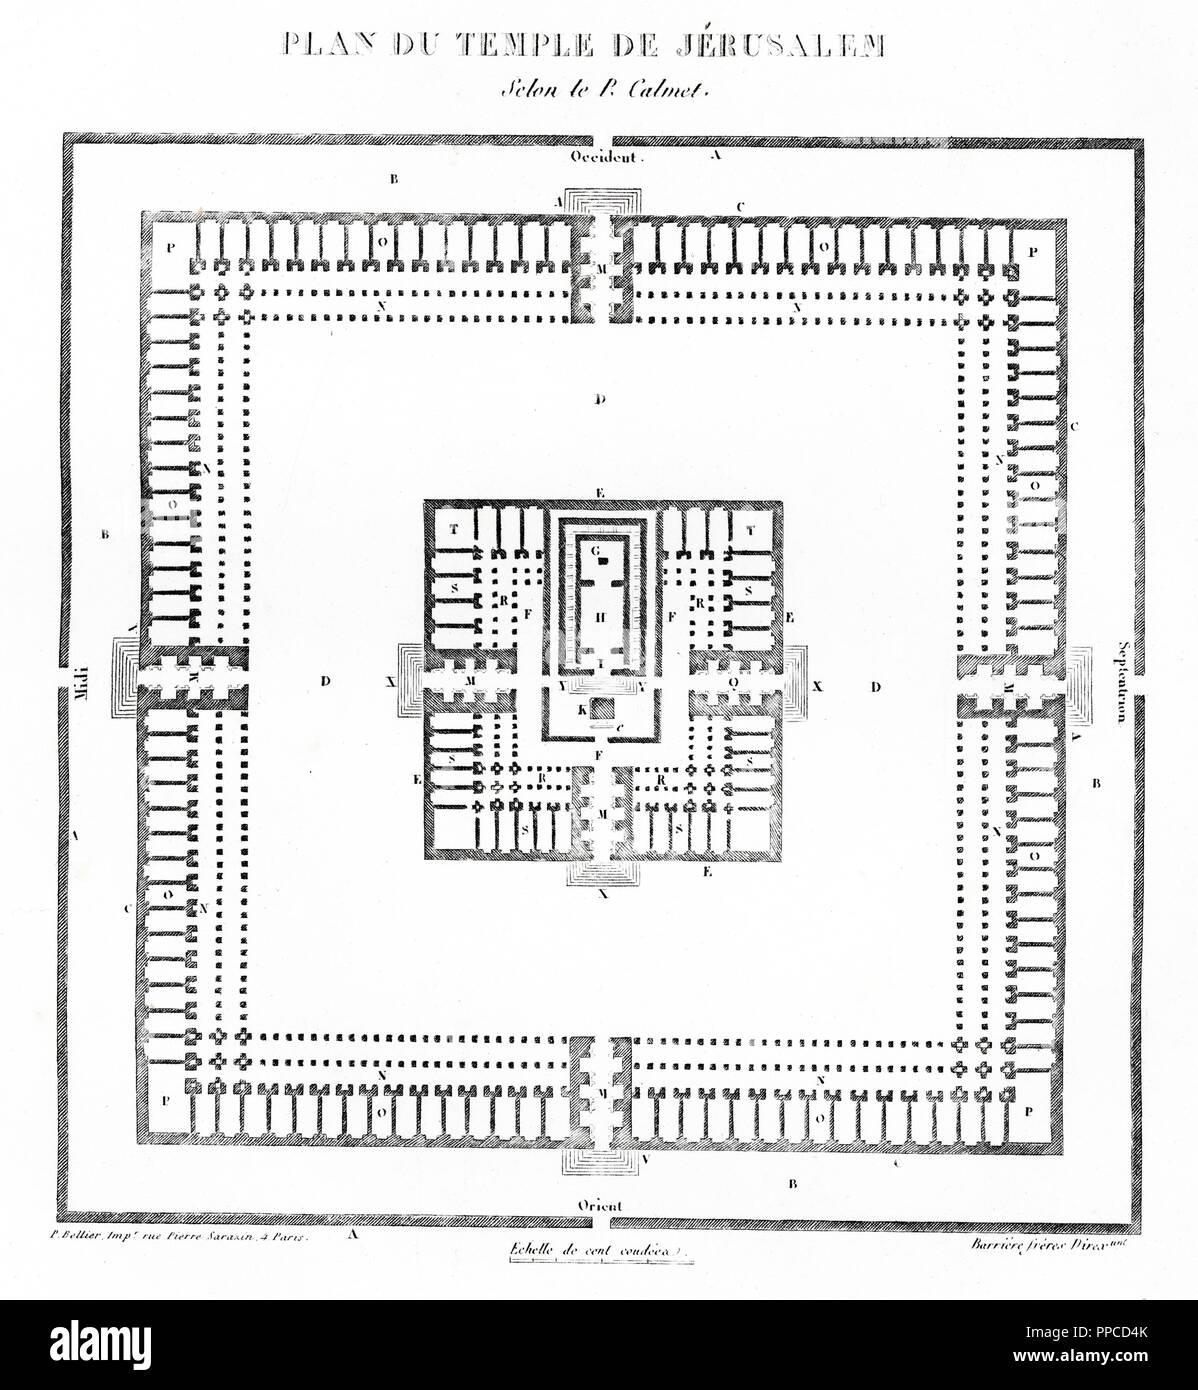 Historia sagrada. Plano del templo de Salomón en Jerusalén. Grabado de 1862  Stock Photo - Alamy